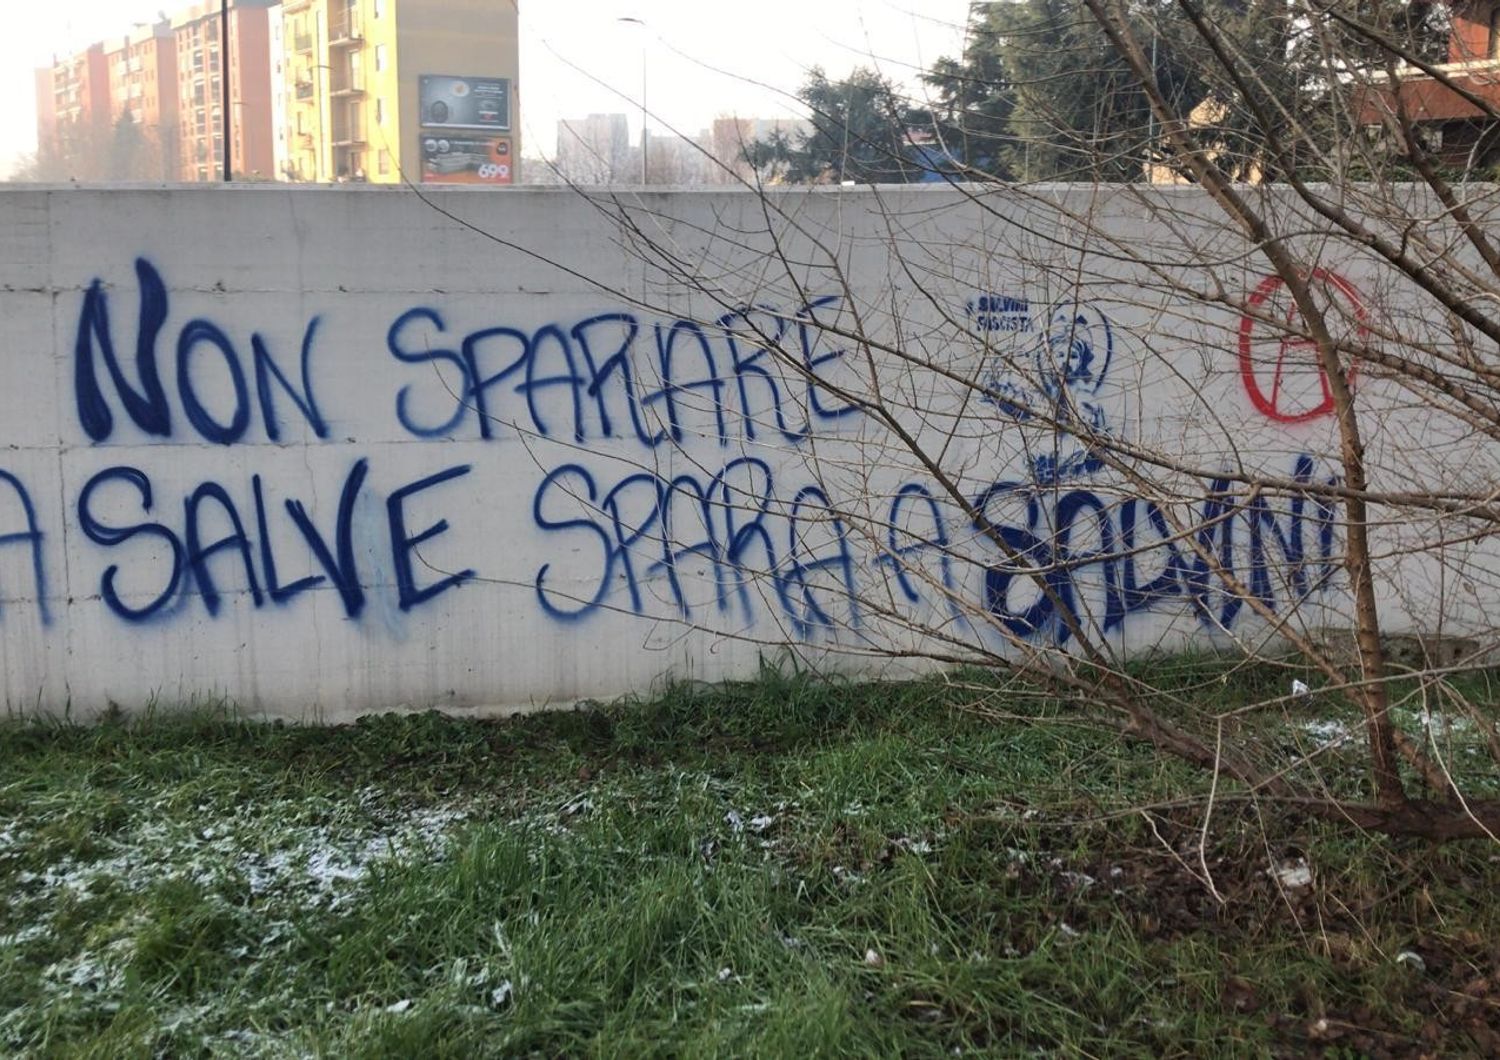 &#39;Non sparare a salve spara a Salvini&#39;. Sulla scritta su un muro a Milano indaga la Digos